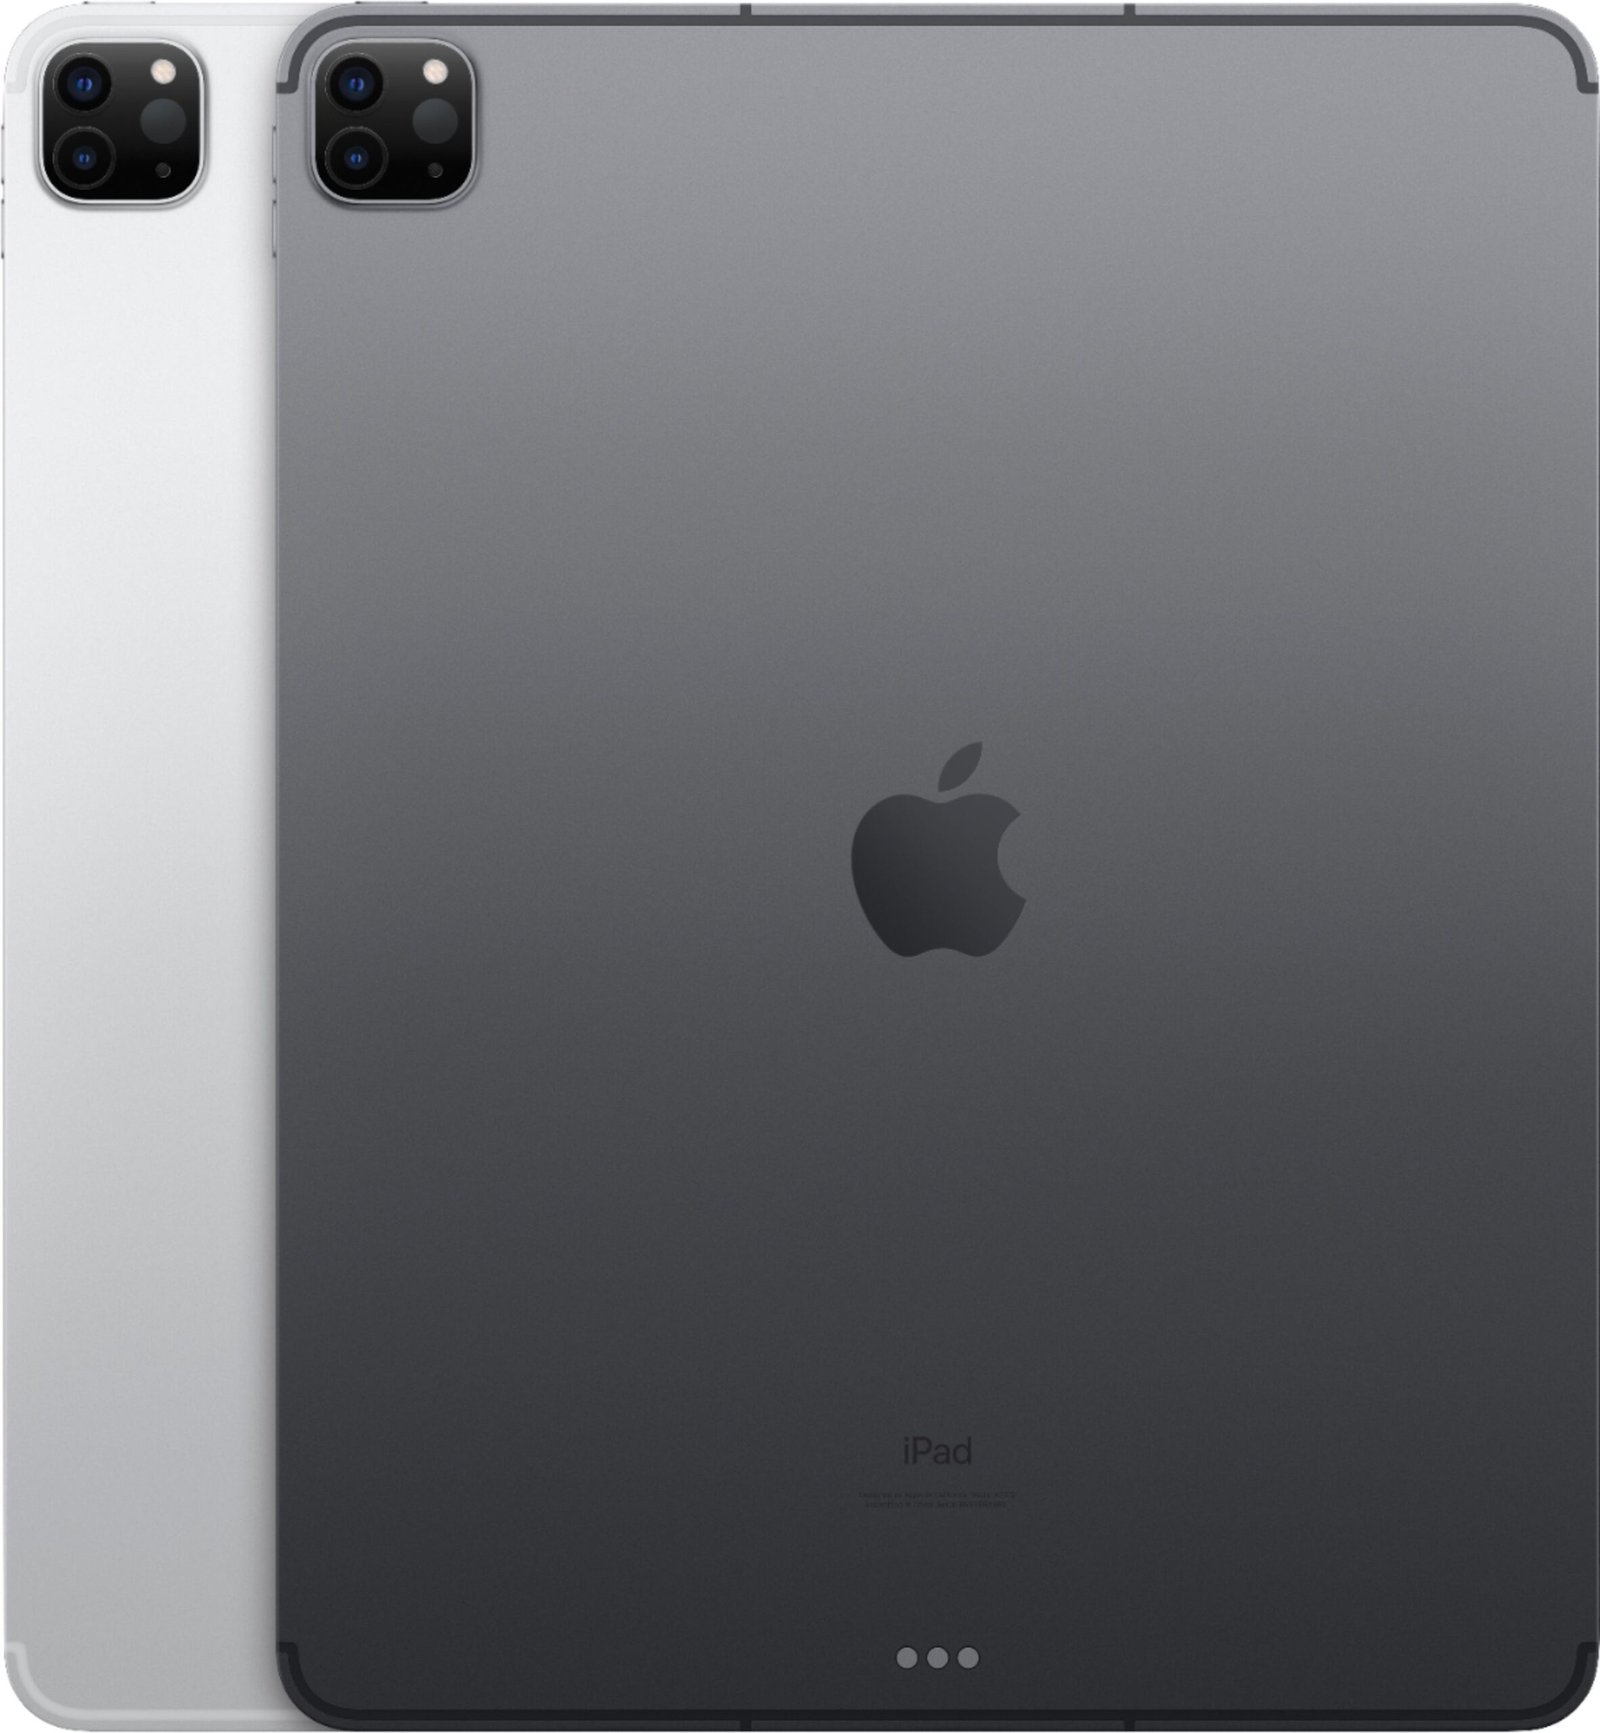  Apple iPad Pro (256GB, Wi-Fi + celular, gris espacial) Pantalla  de 12.9 pulgadas ML3T2LL/A (reacondicionado) : Electrónica